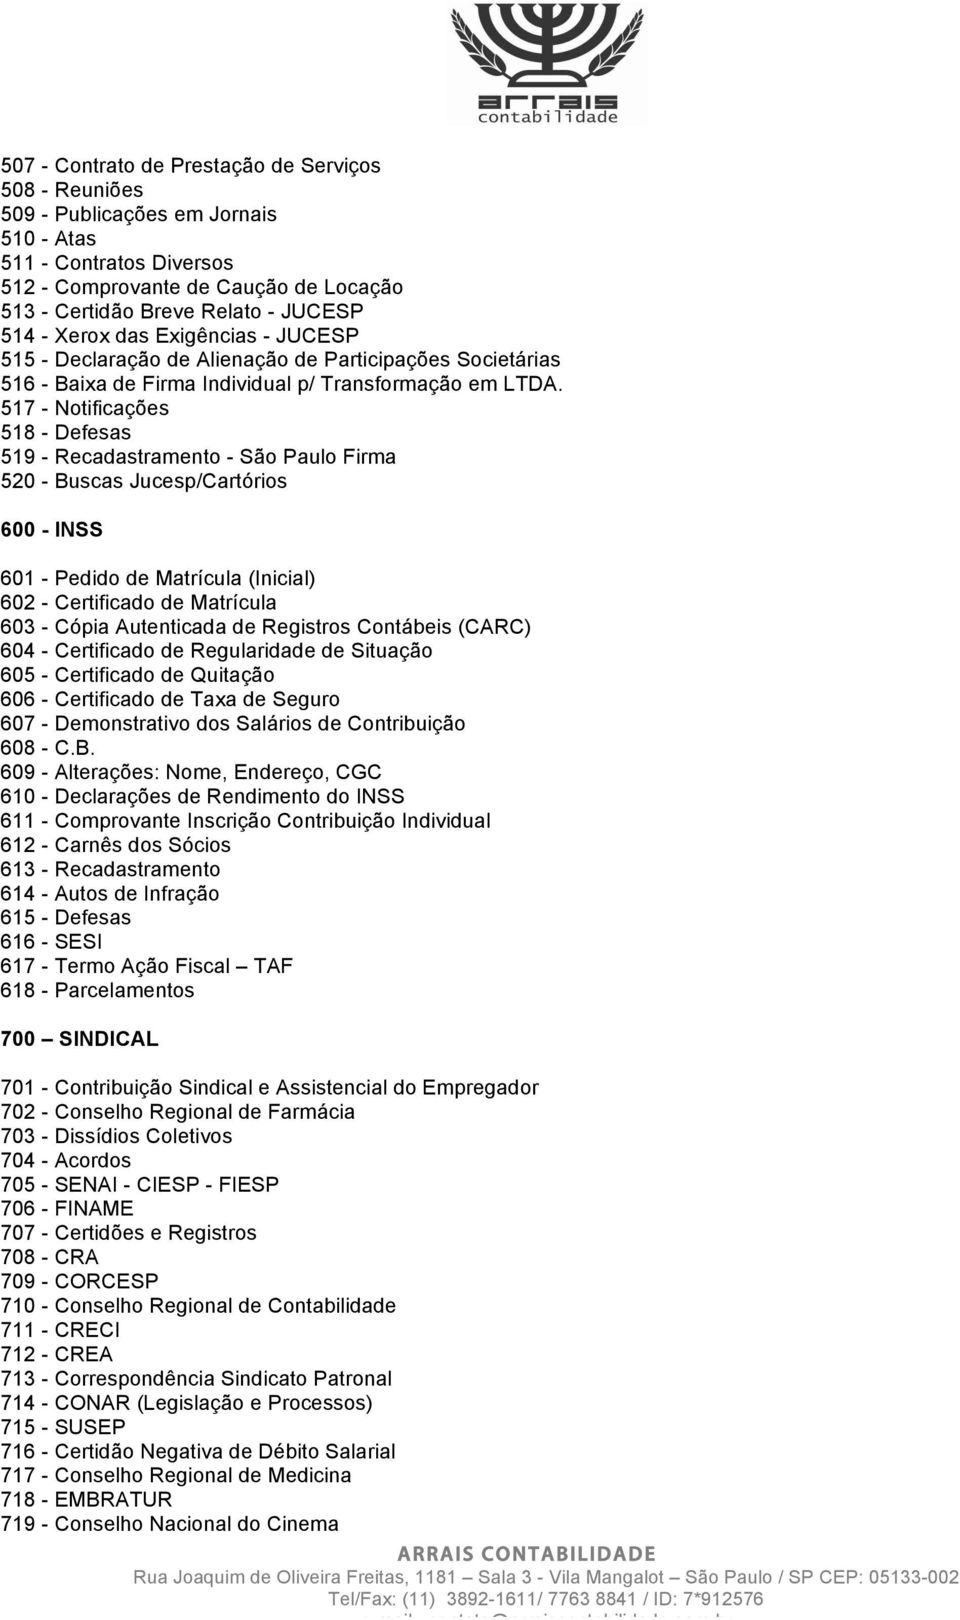 517 - Notificações 518 - Defesas 519 - Recadastramento - São Paulo Firma 520 - Buscas Jucesp/Cartórios 600 - INSS 601 - Pedido de Matrícula (Inicial) 602 - Certificado de Matrícula 603 - Cópia